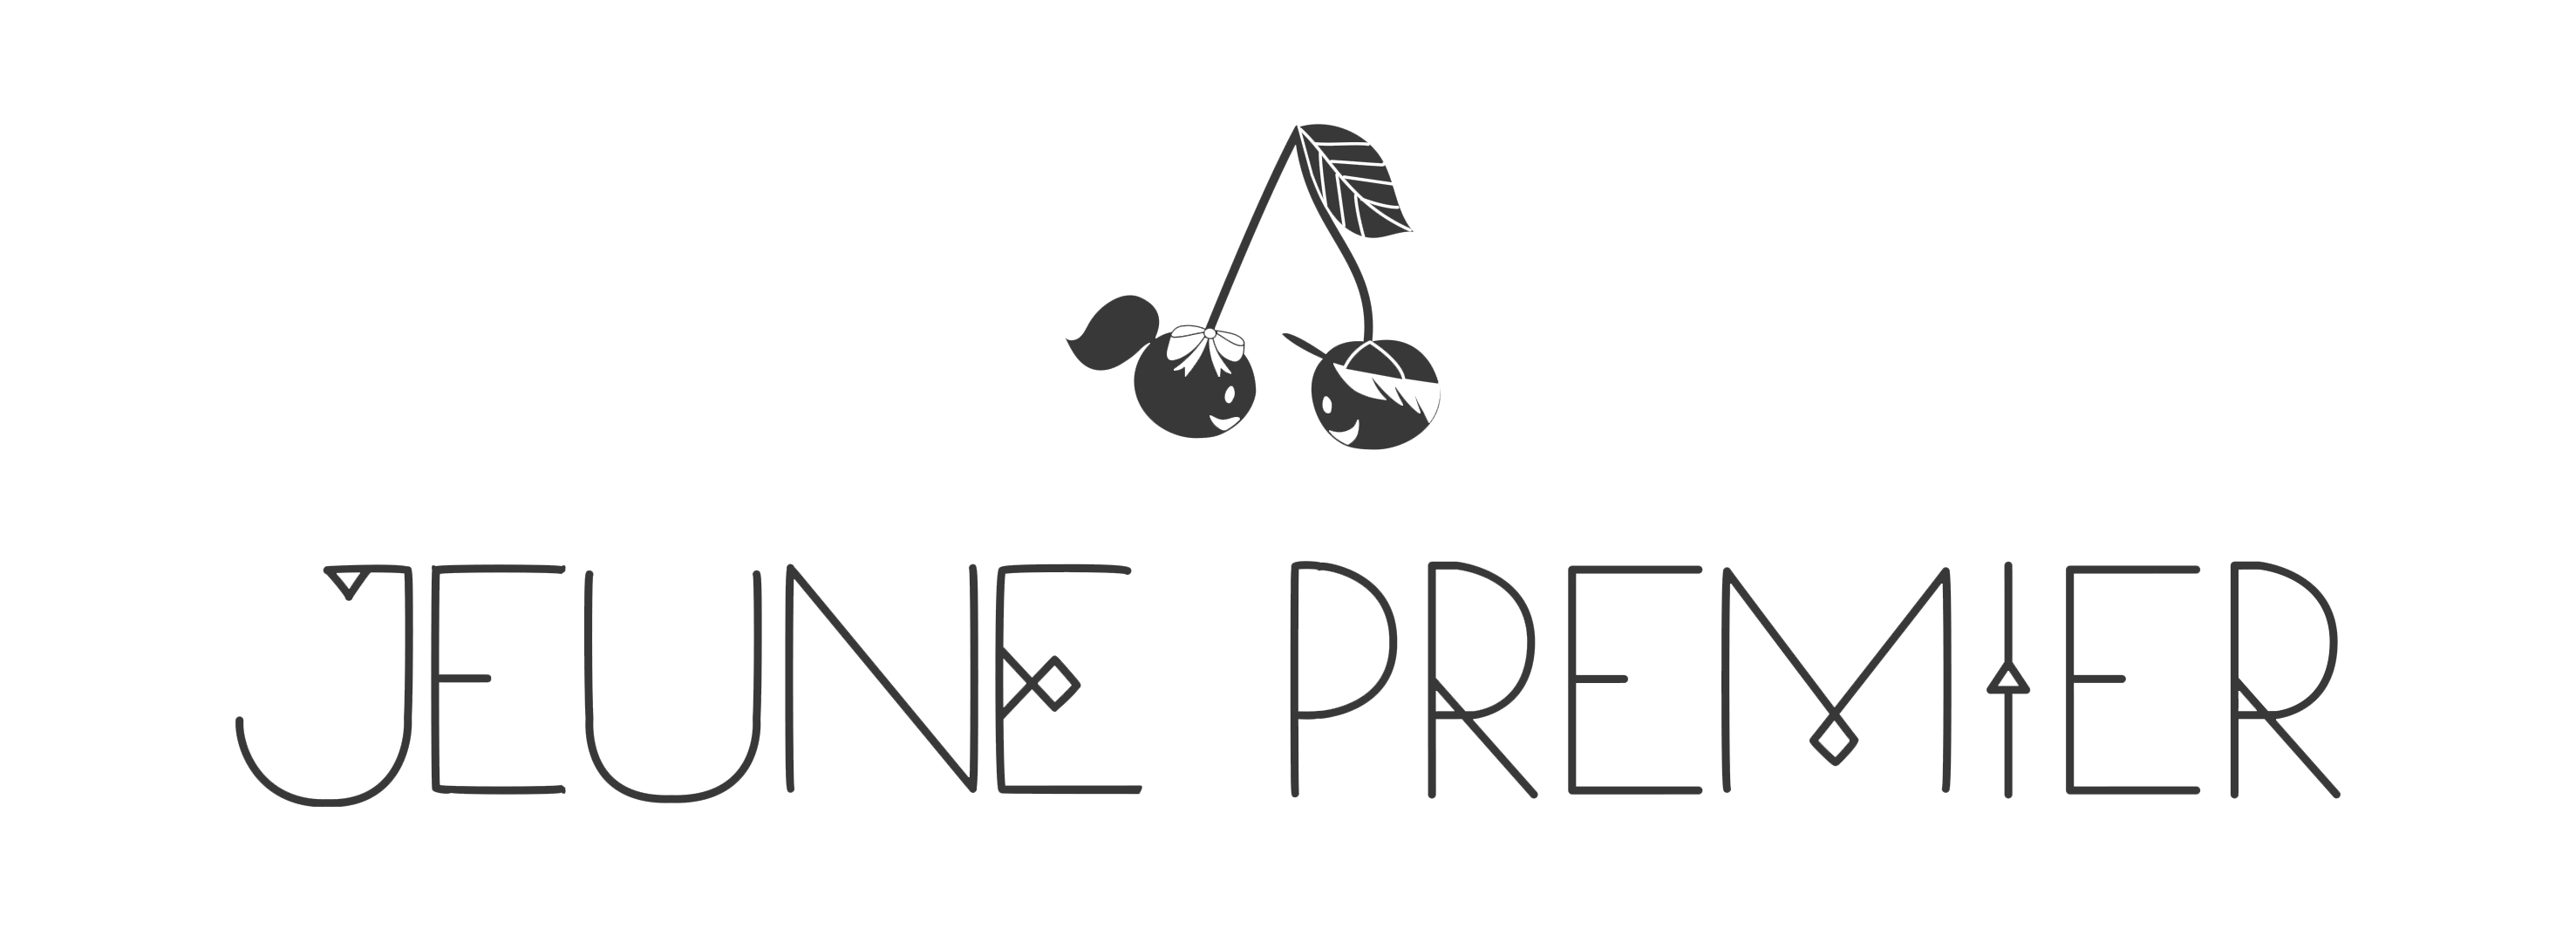 Логотип бренда Jeune premier